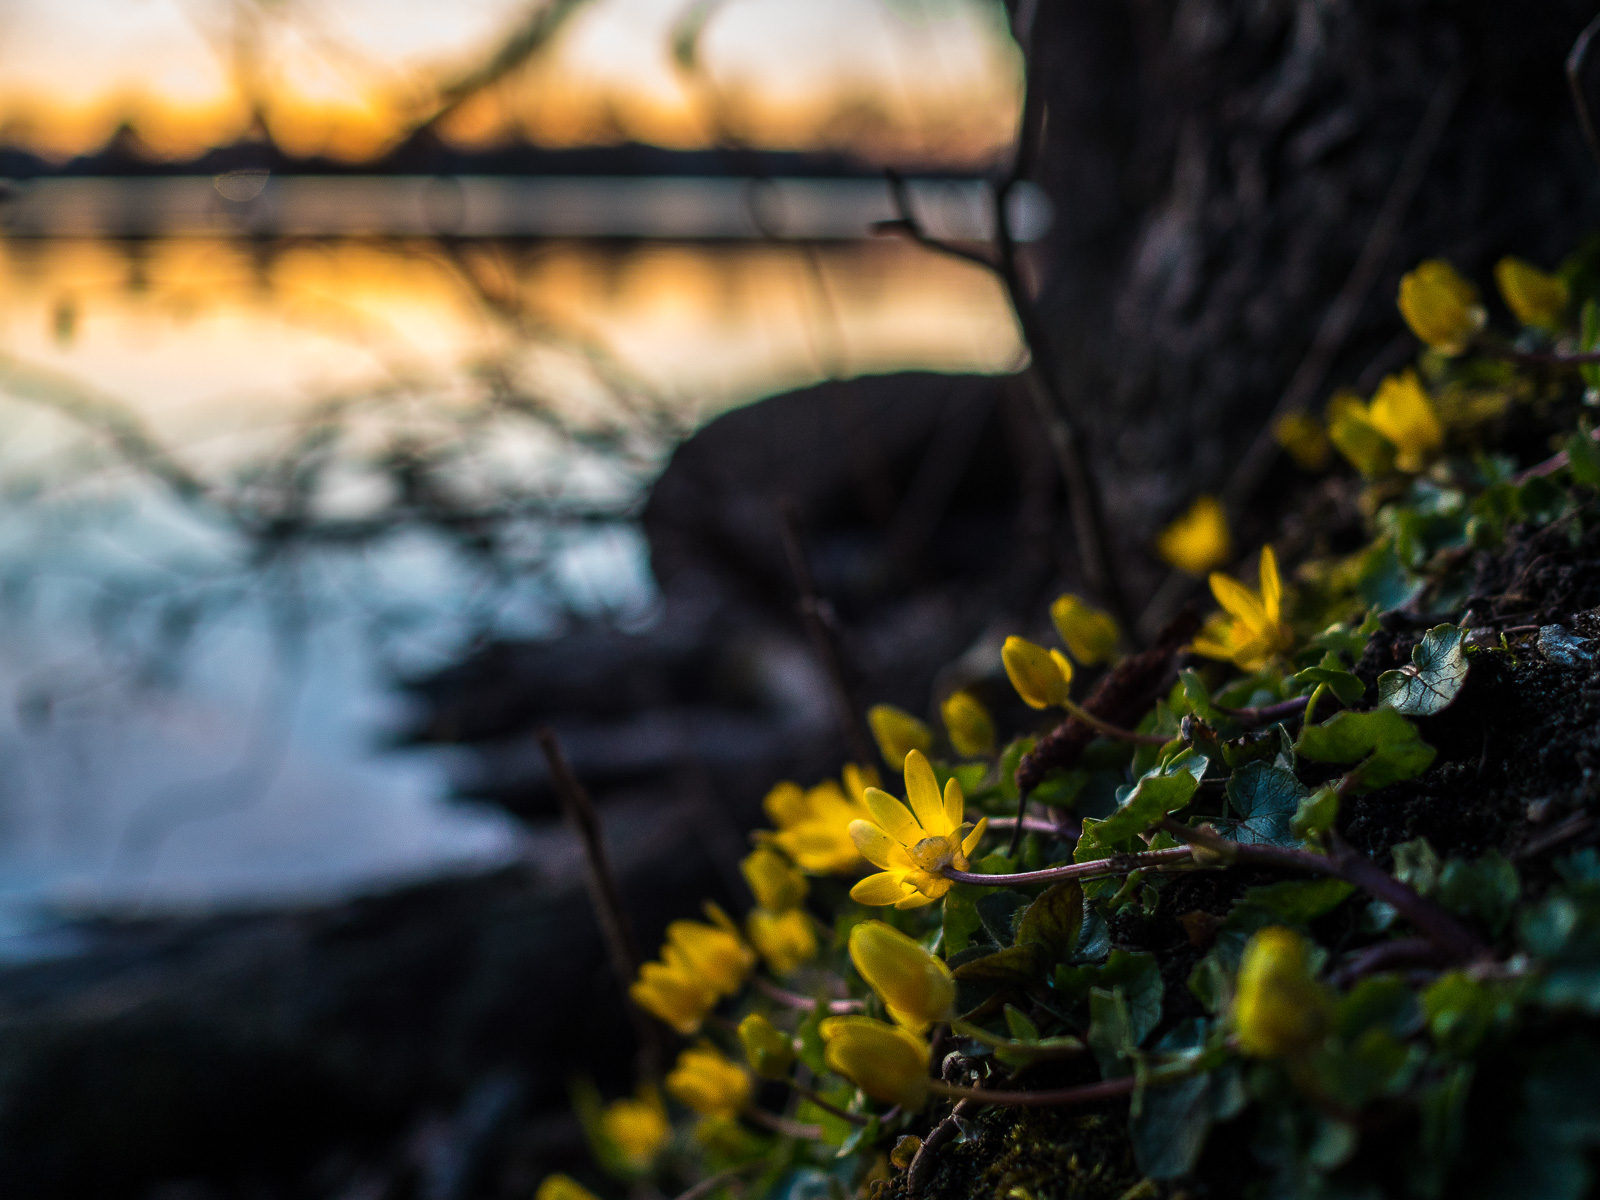 gelbe Blumen, evtl. Sumpfdotterblumen, an einem Hang vor dunklem Hintergrund. Links unscharf eine Seeoberfläche, auf der sich die Farben eines intensiv orangefarbenen Sonnenuntergangs spiegeln.